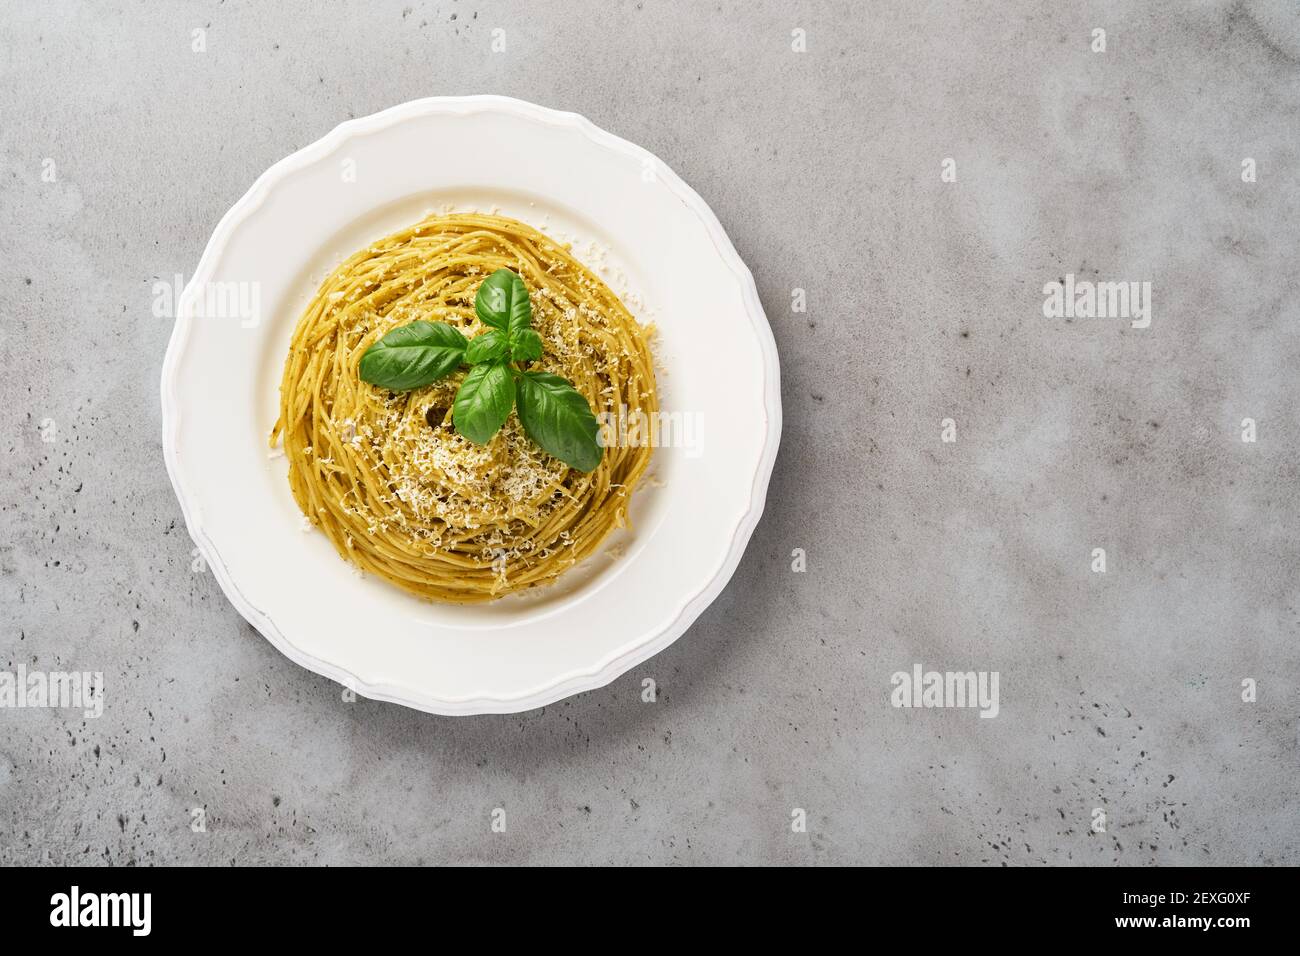 Espaguetis de pasta con salsa de pesto y hojas frescas de albahaca en un tazón blanco. Fondo gris. Se burlan. Vista superior. Foto de stock